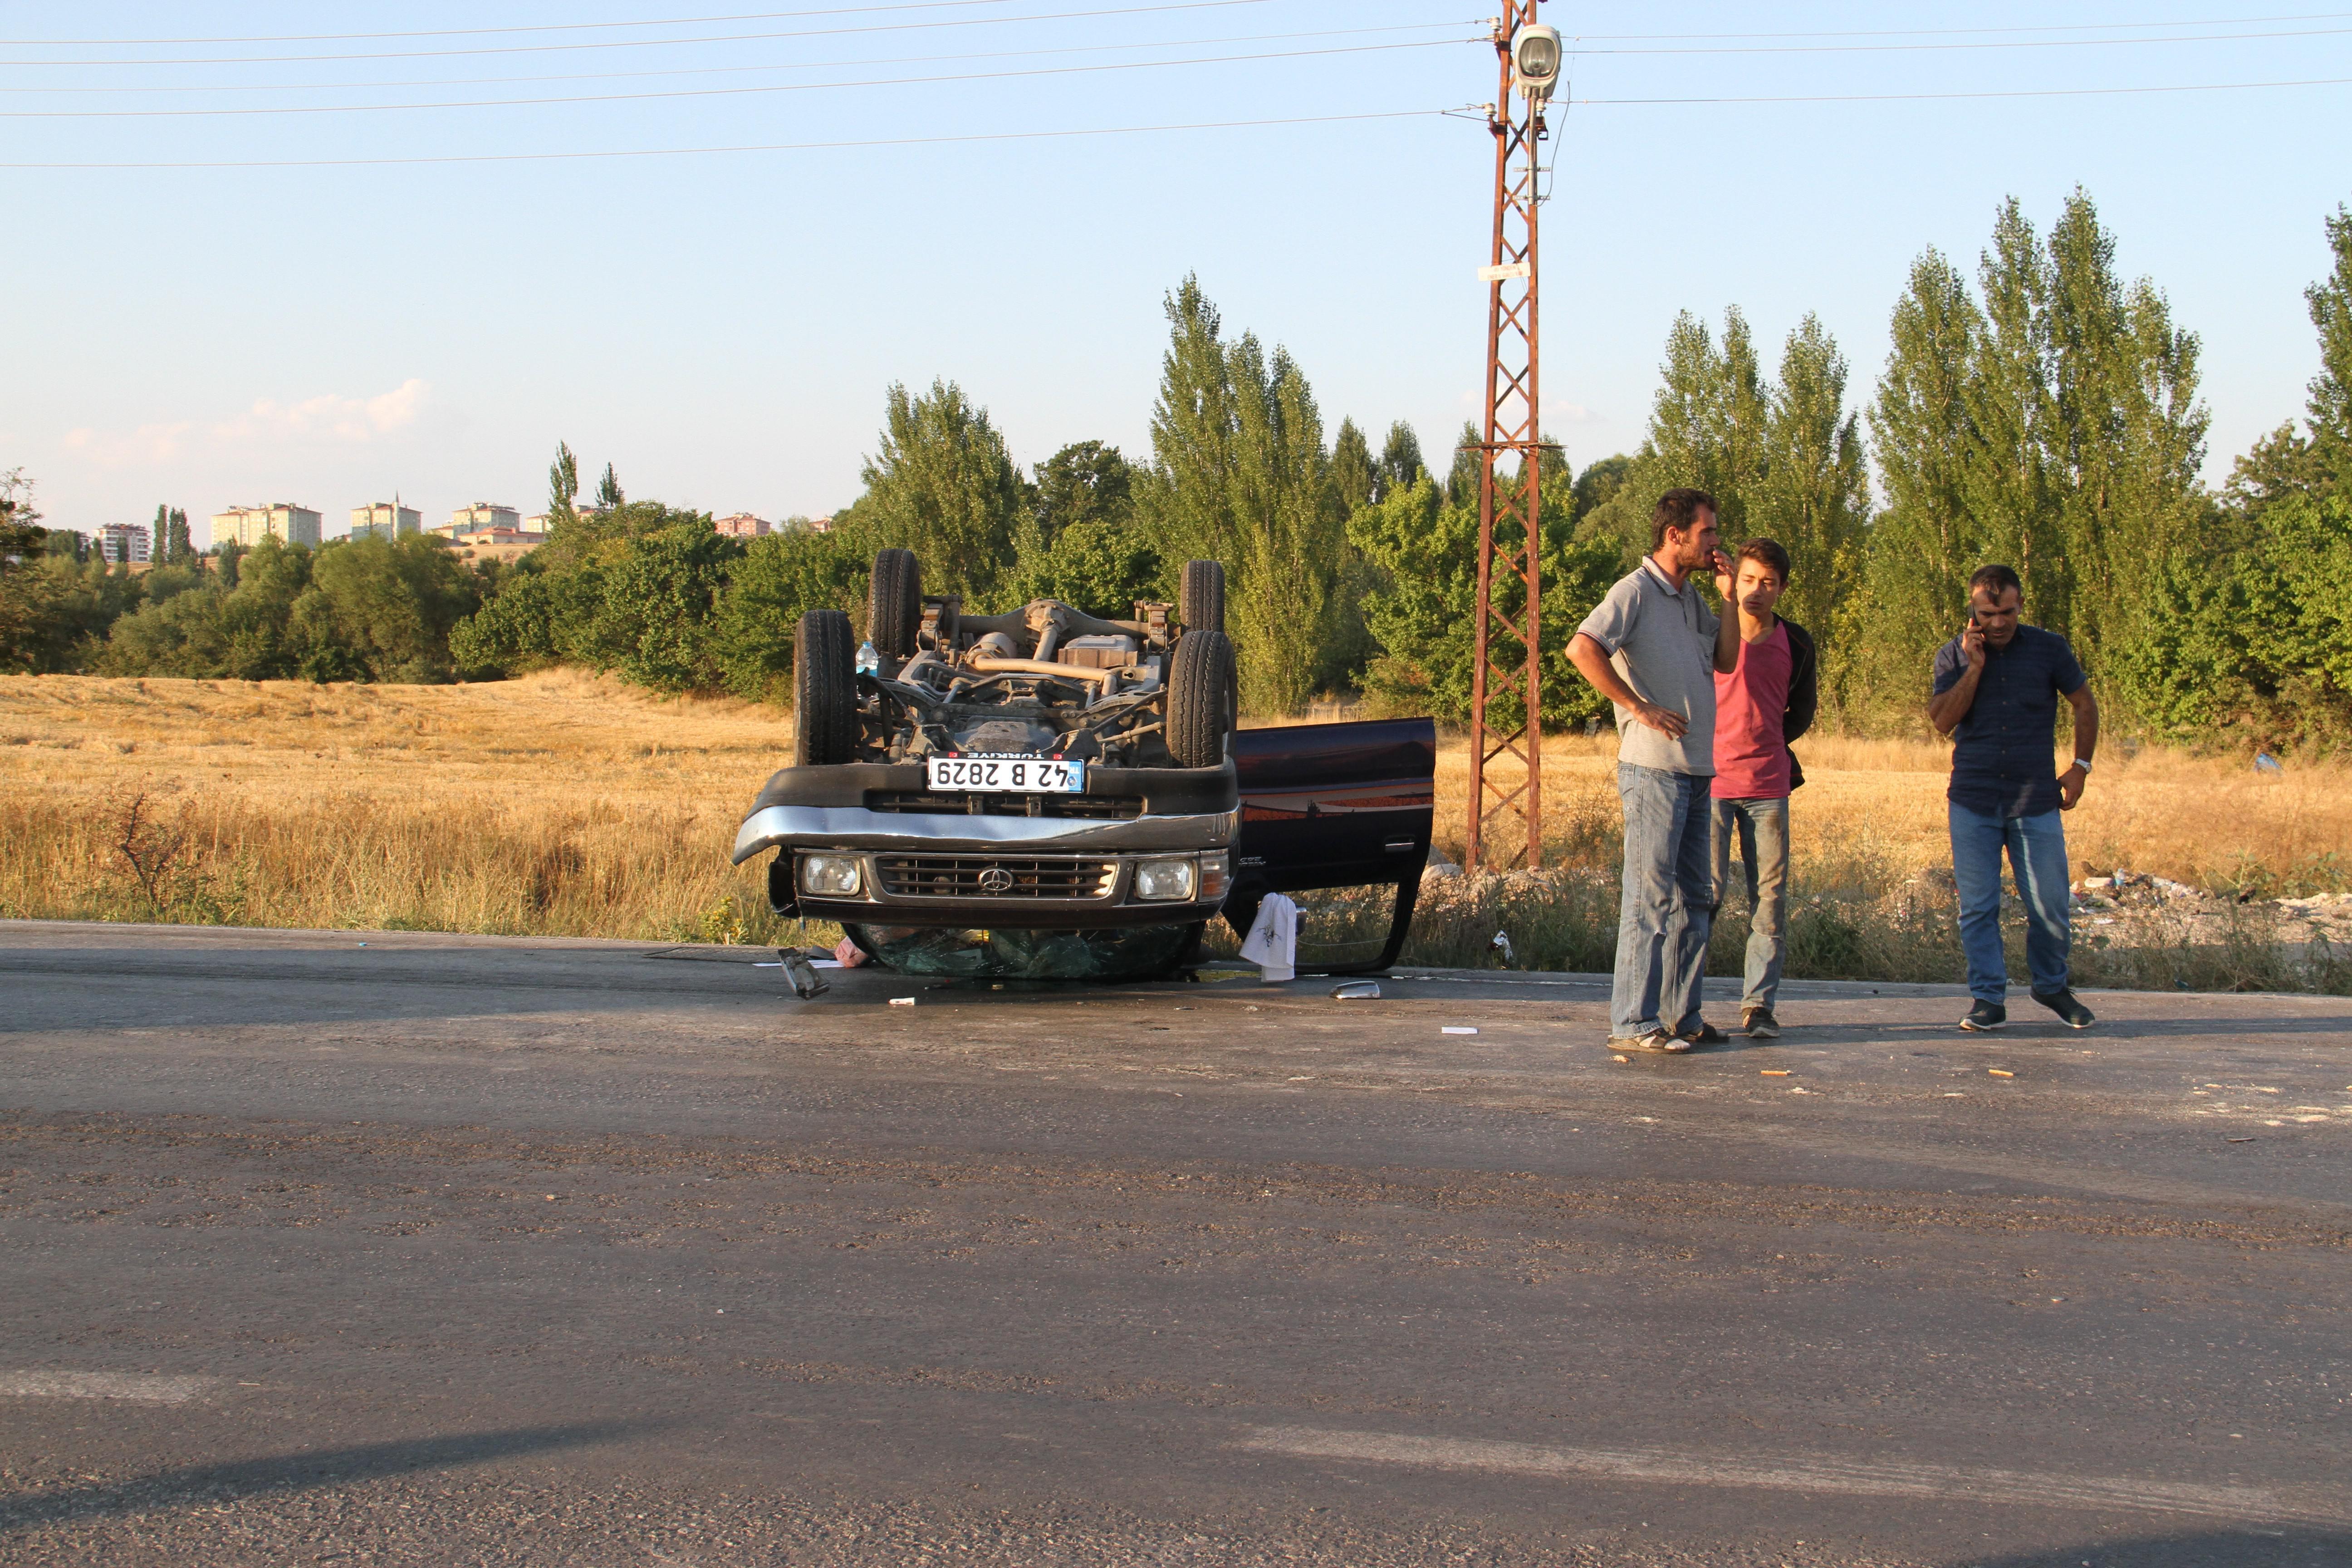 Konyada trafik kazası: 4 yaralı